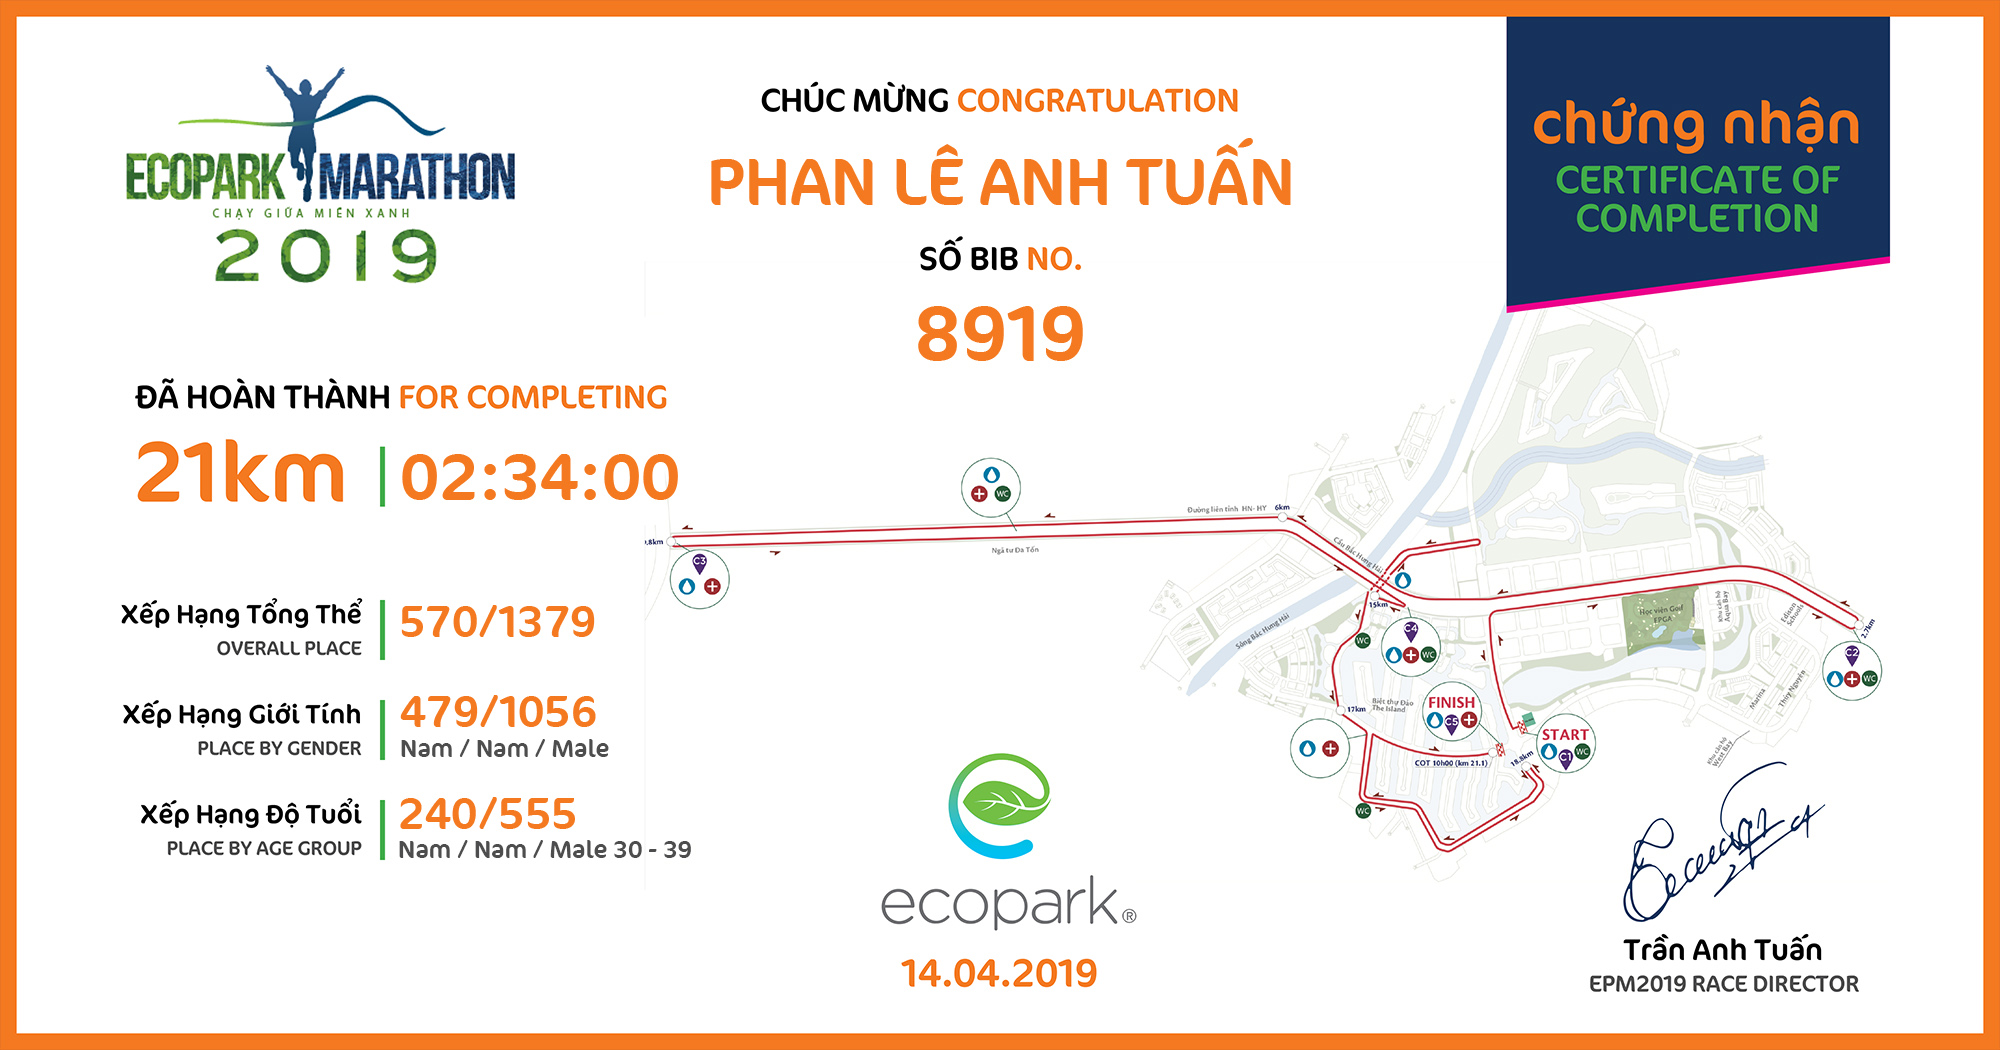 8919 - Phan Lê Anh Tuấn